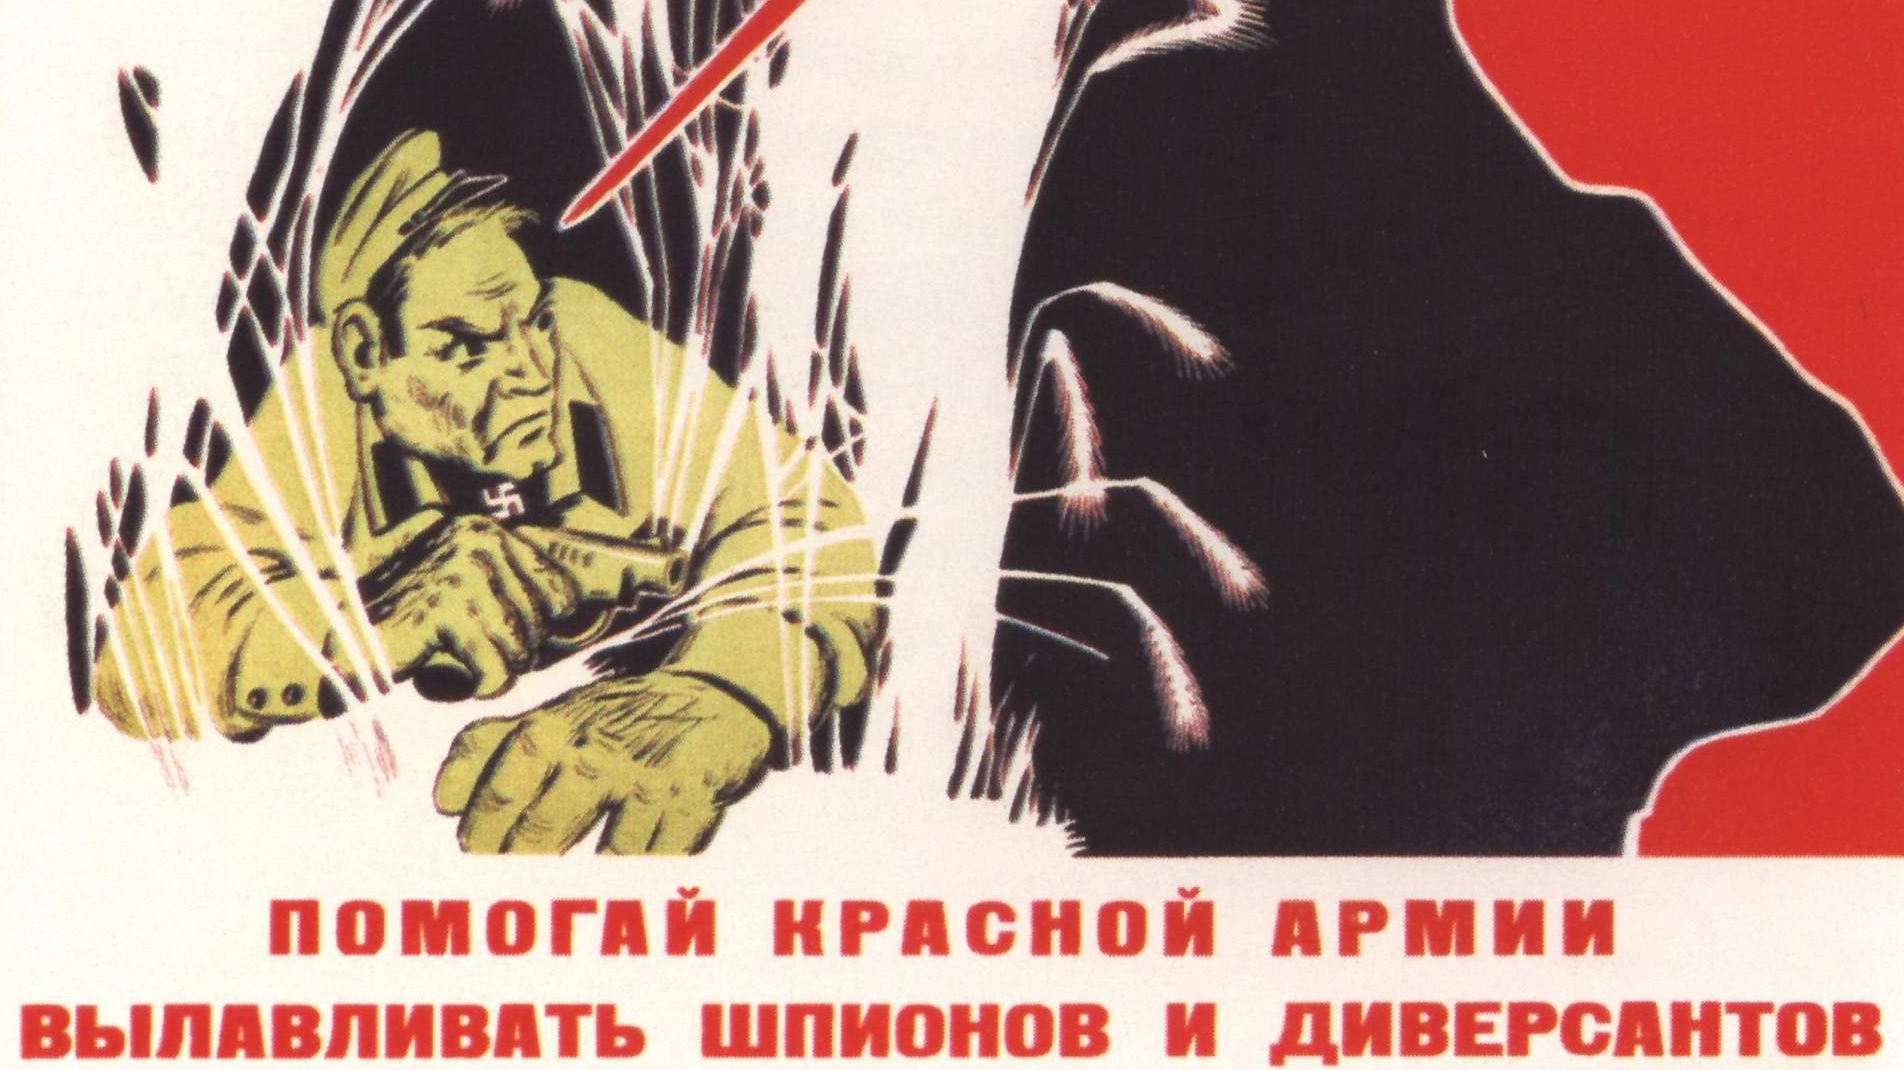 Л. Вандышев. Помогай красной армии вылавливать шпионов и диверсантов (фрагмент). 1941